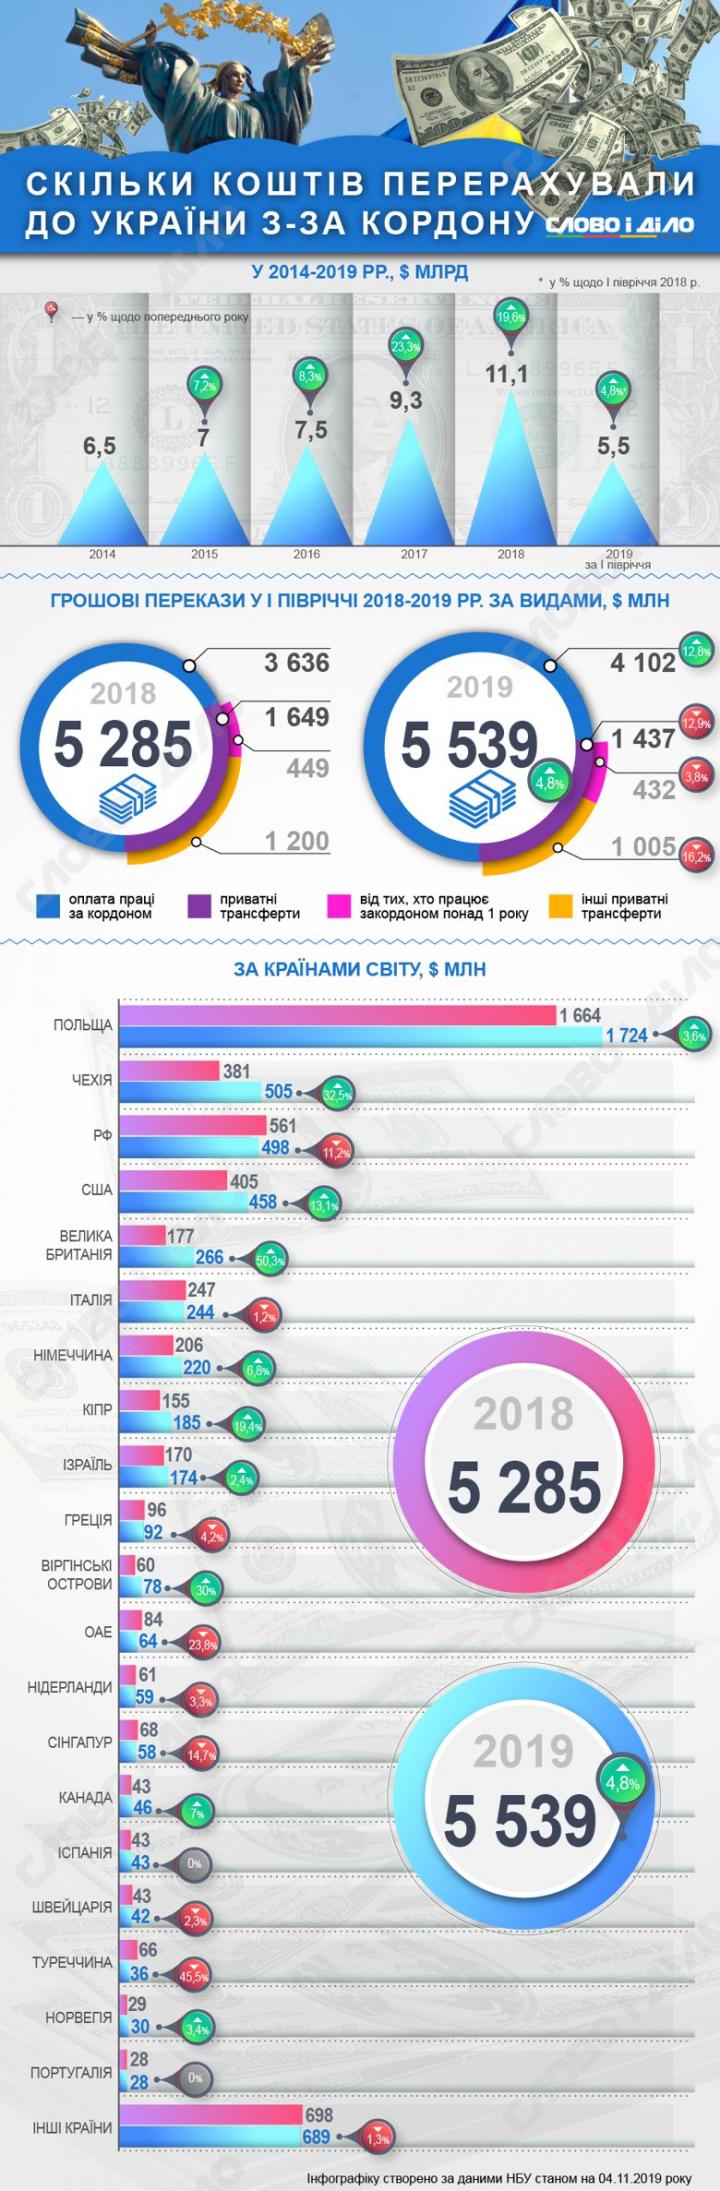 Сколько денег перечисляли в Украину из-за границы в 2014-2019 (инфографика)